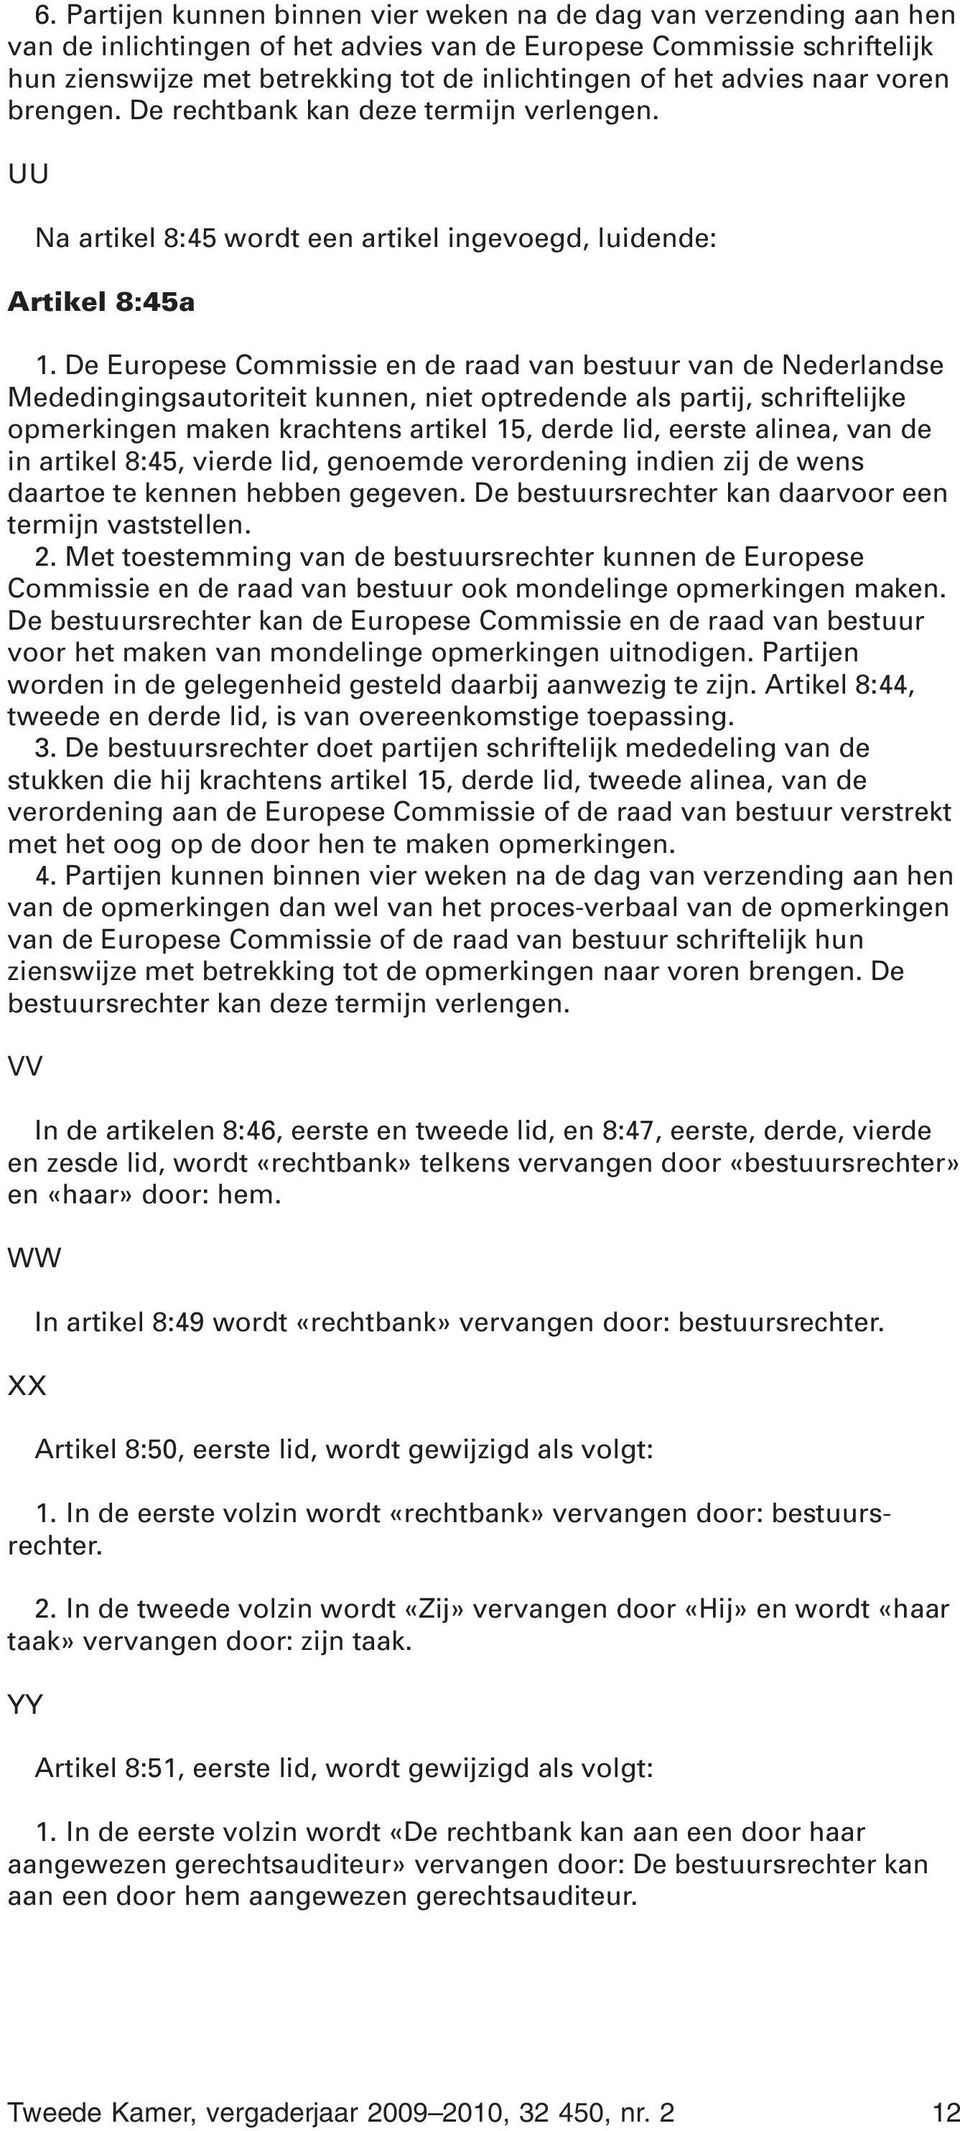 De Europese Commissie en de raad van bestuur van de Nederlandse Mededingingsautoriteit kunnen, niet optredende als partij, schriftelijke opmerkingen maken krachtens artikel 15, derde lid, eerste